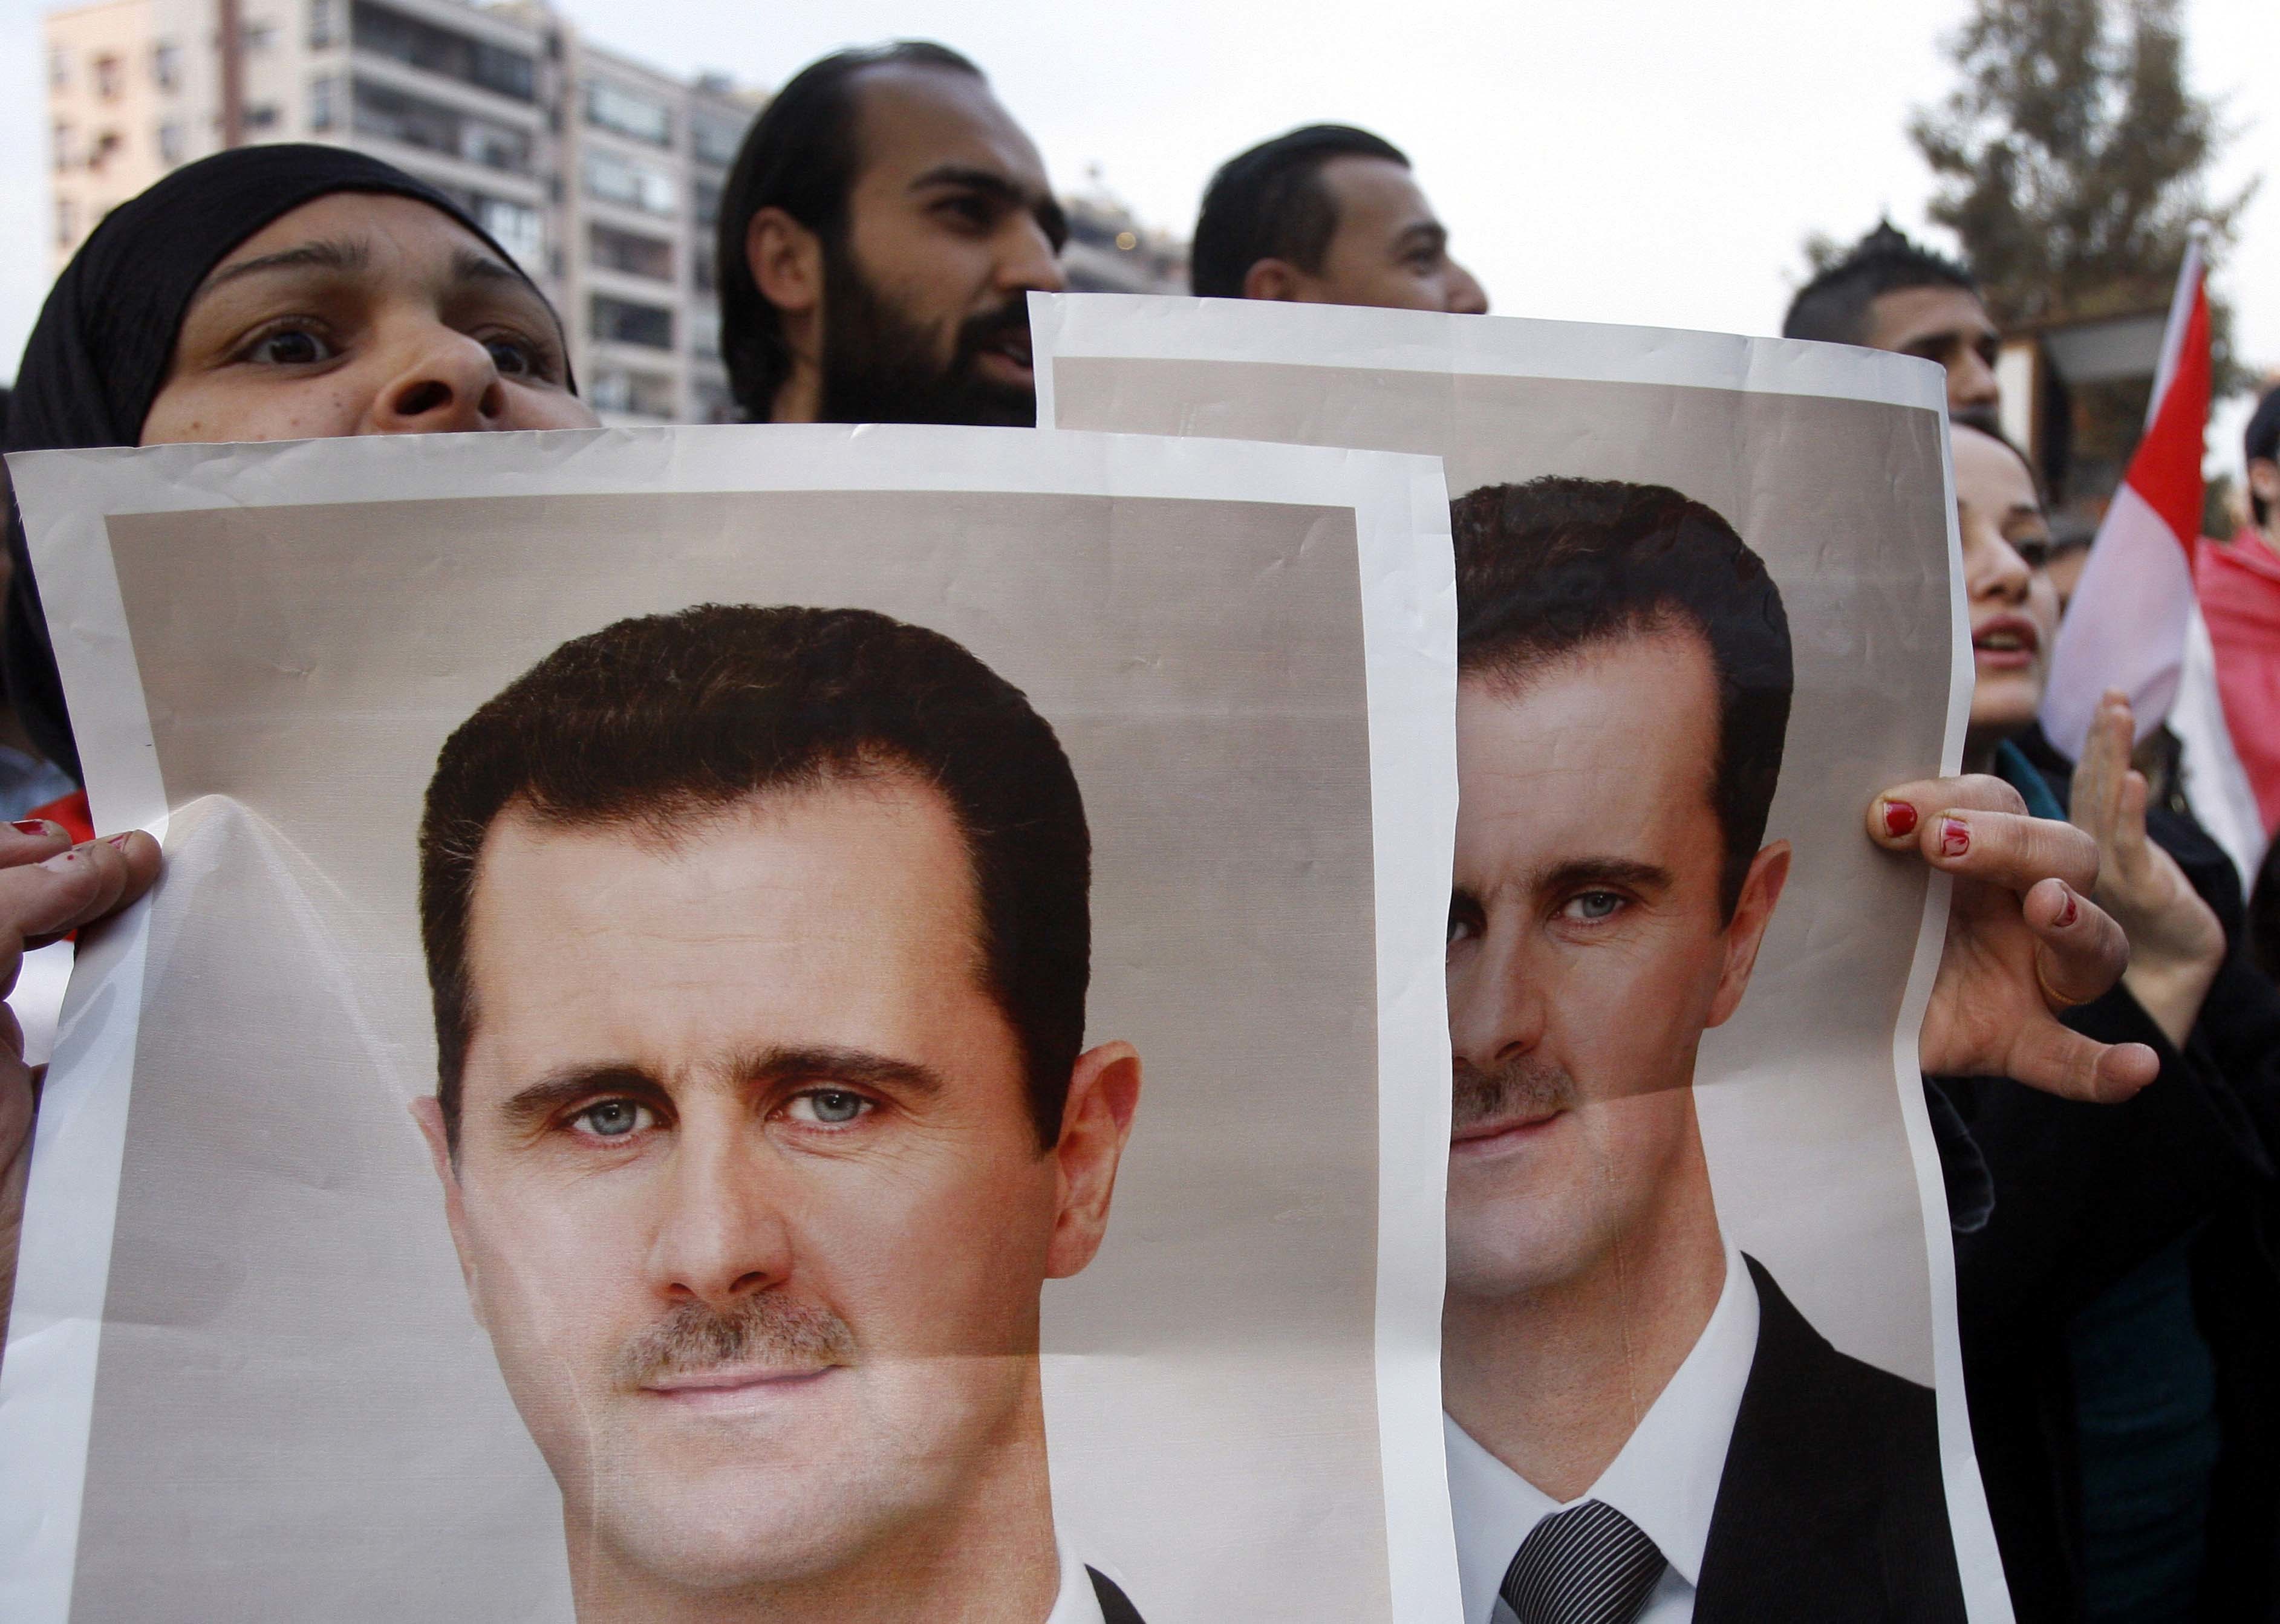 Σχέδιο καταστροφής της Συρίας απο ξένες δυνάμεις “βλέπει” ο Άσαντ